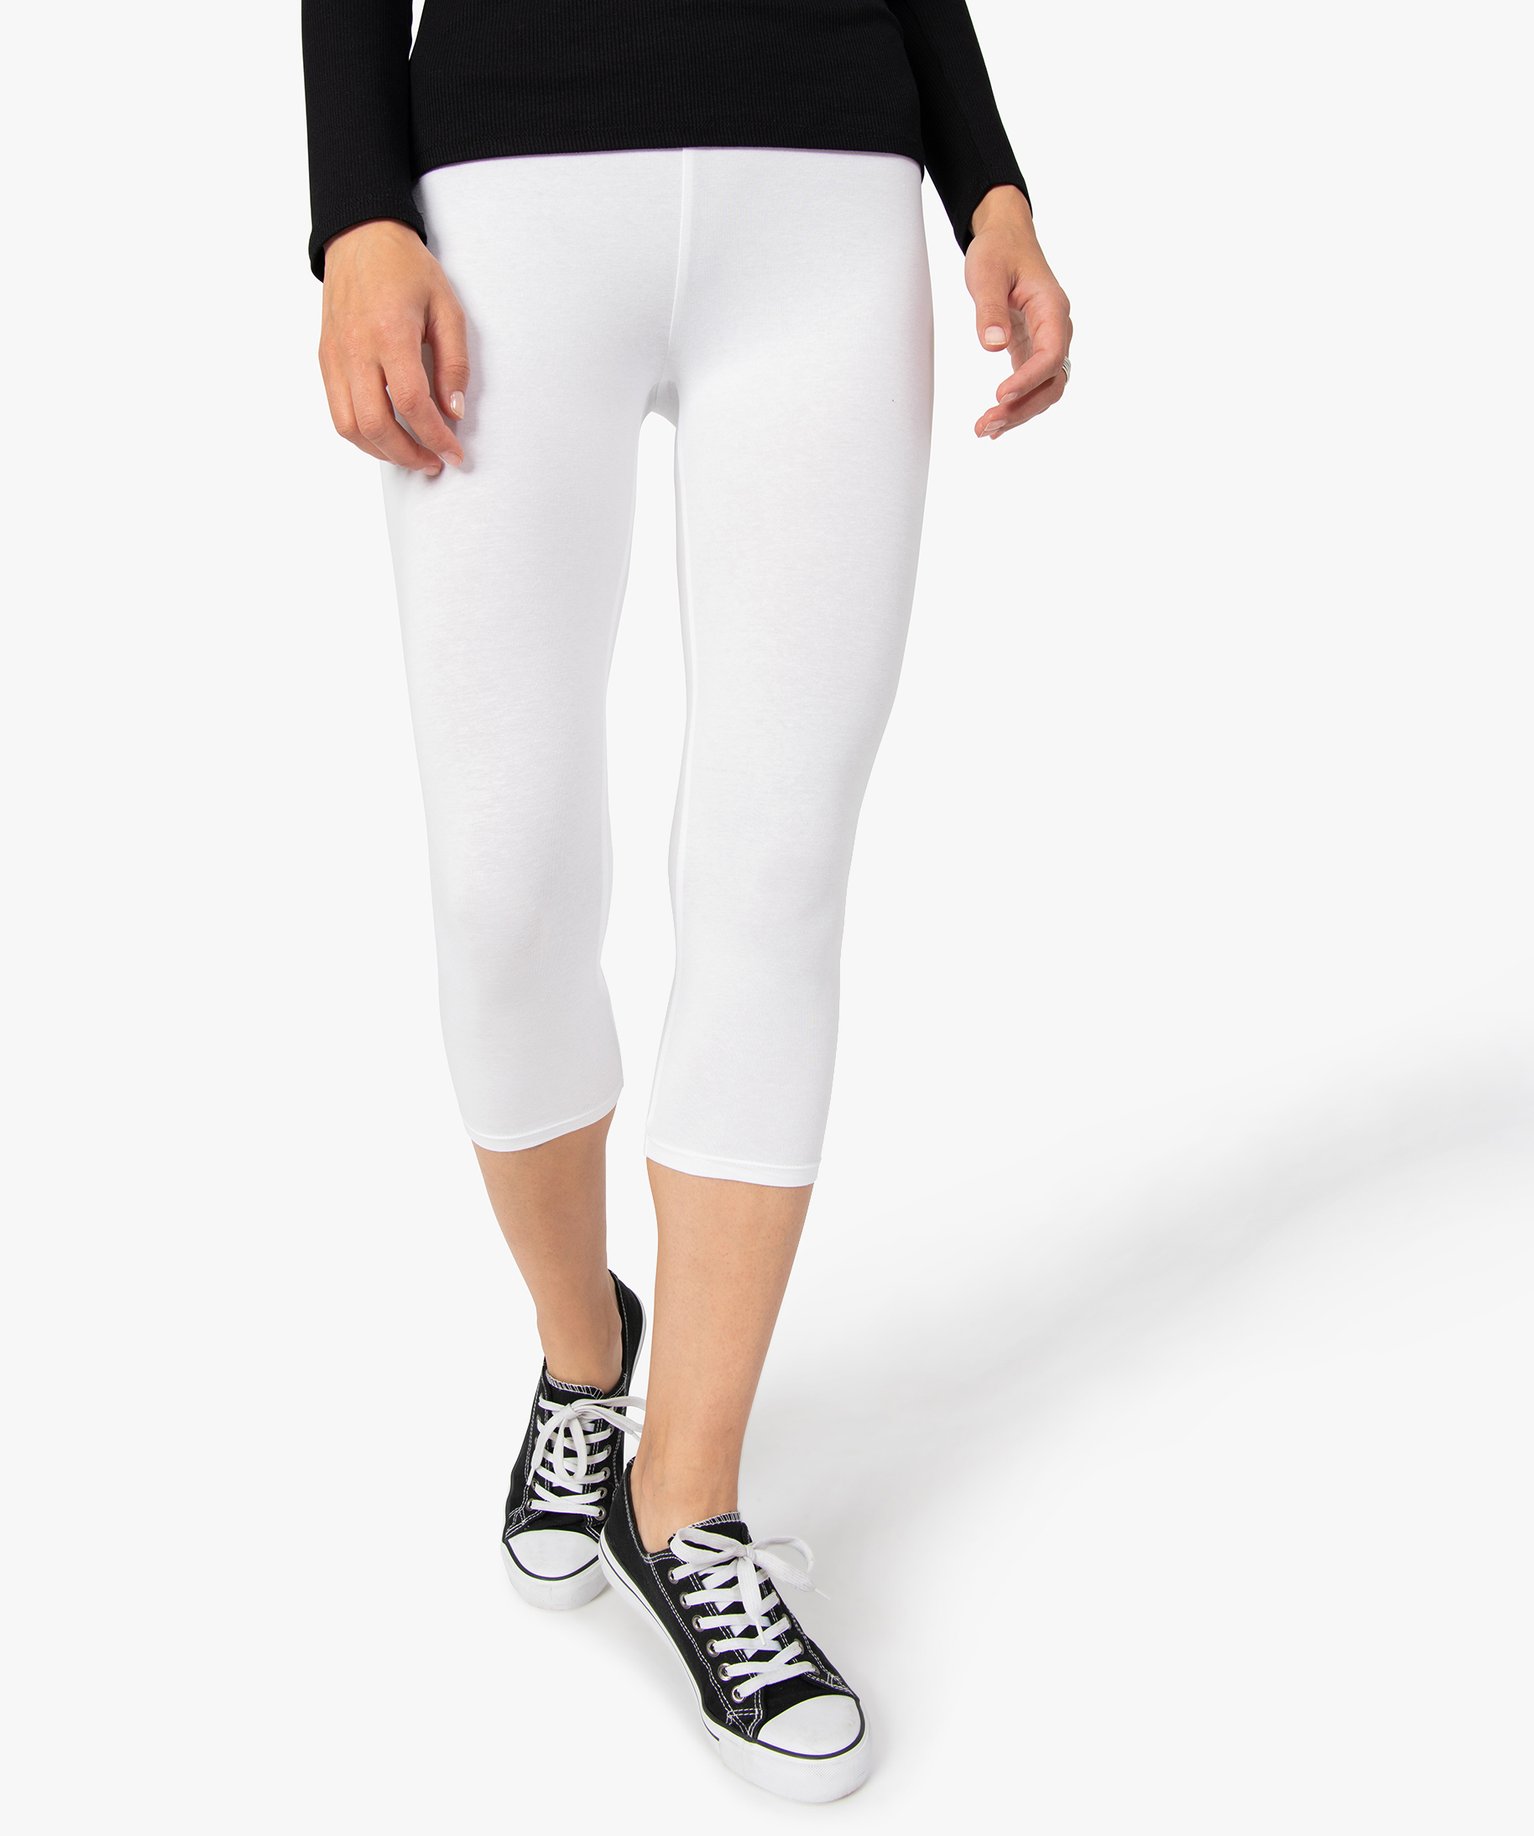 leggings femme contenant du coton bio longueur mollet blanc leggings et jeggings